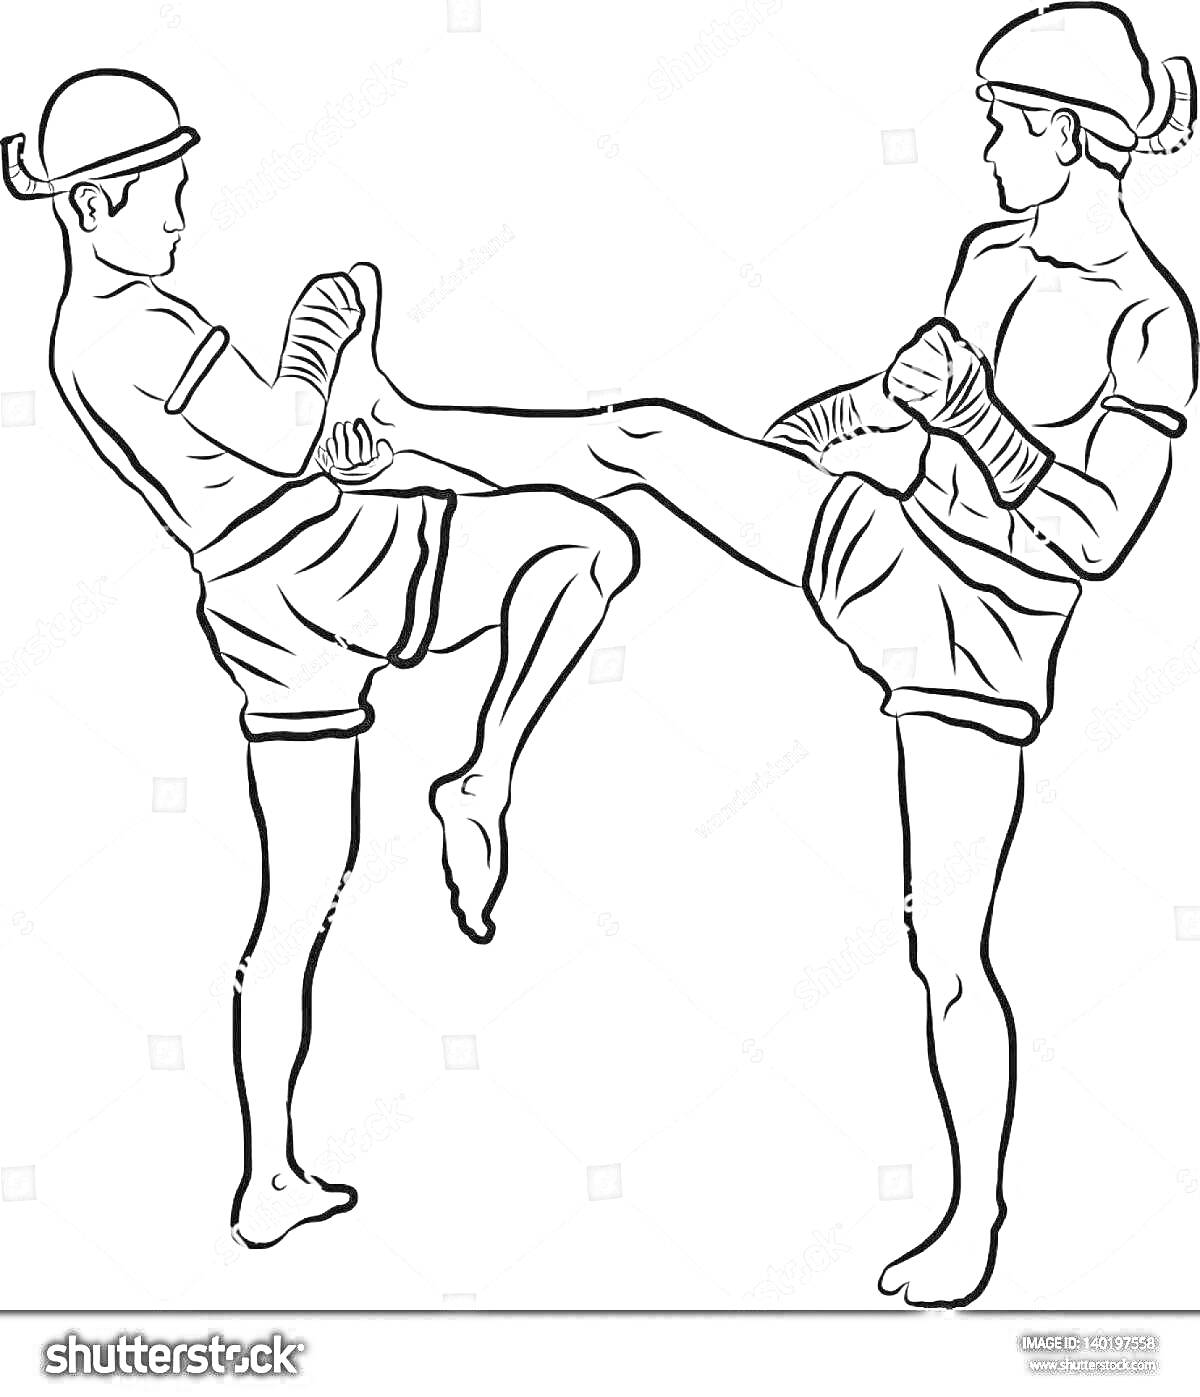 Раскраска Два кикбоксера в защитных шлемах и перчатках обмениваются ударами ногами